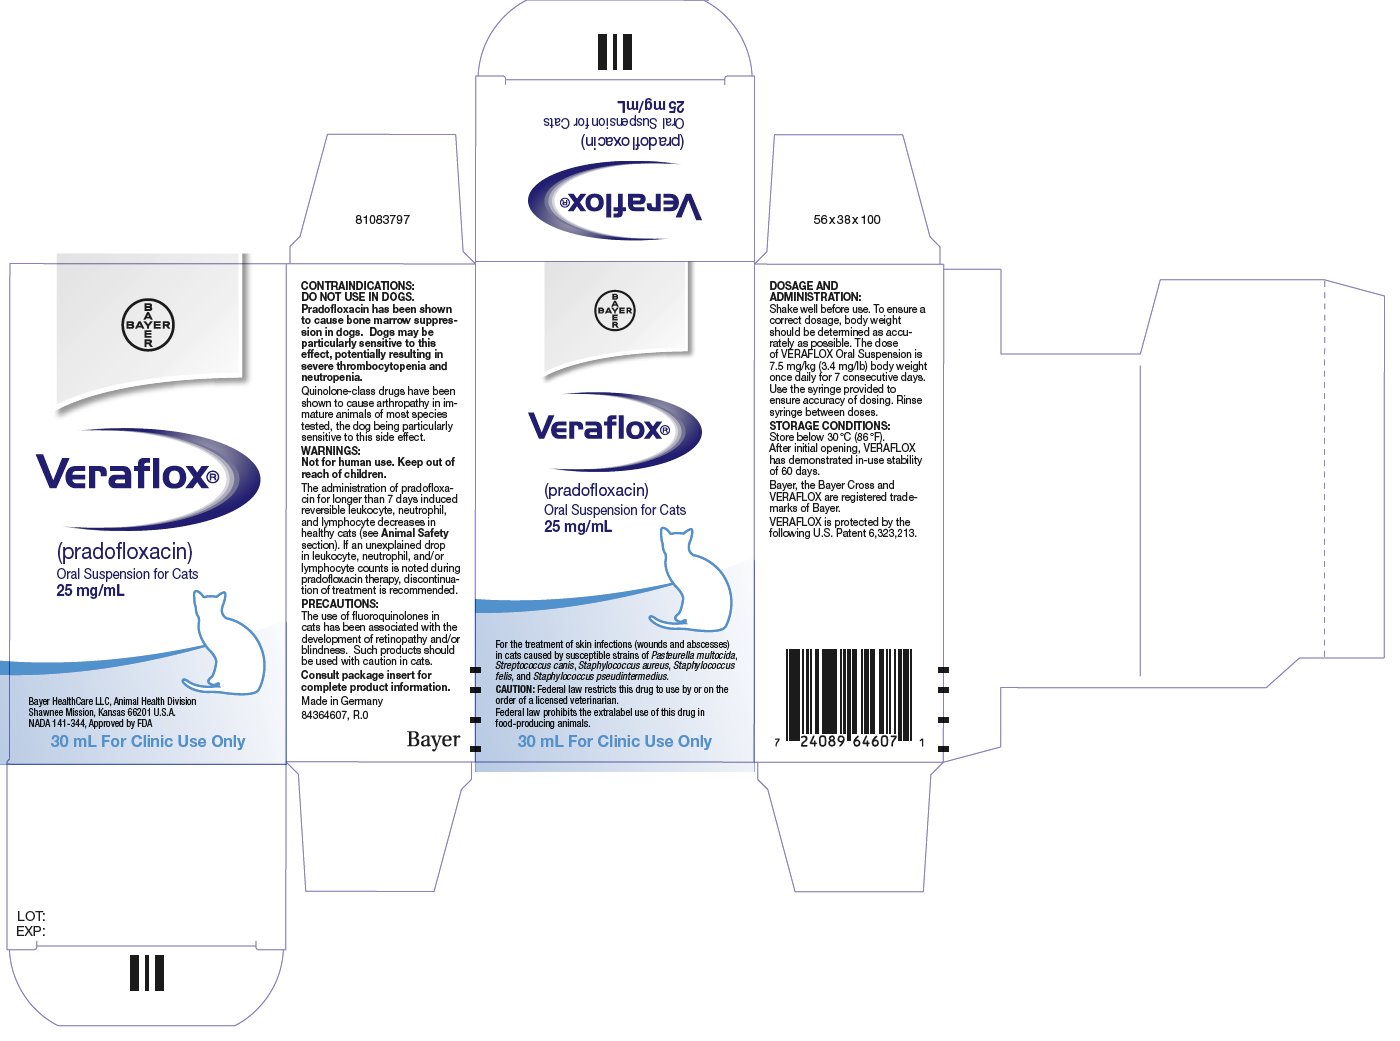 Veraflox (pradofloxacin) Oral Suspension for Cats 25 mg/mL - 30 mL Carton